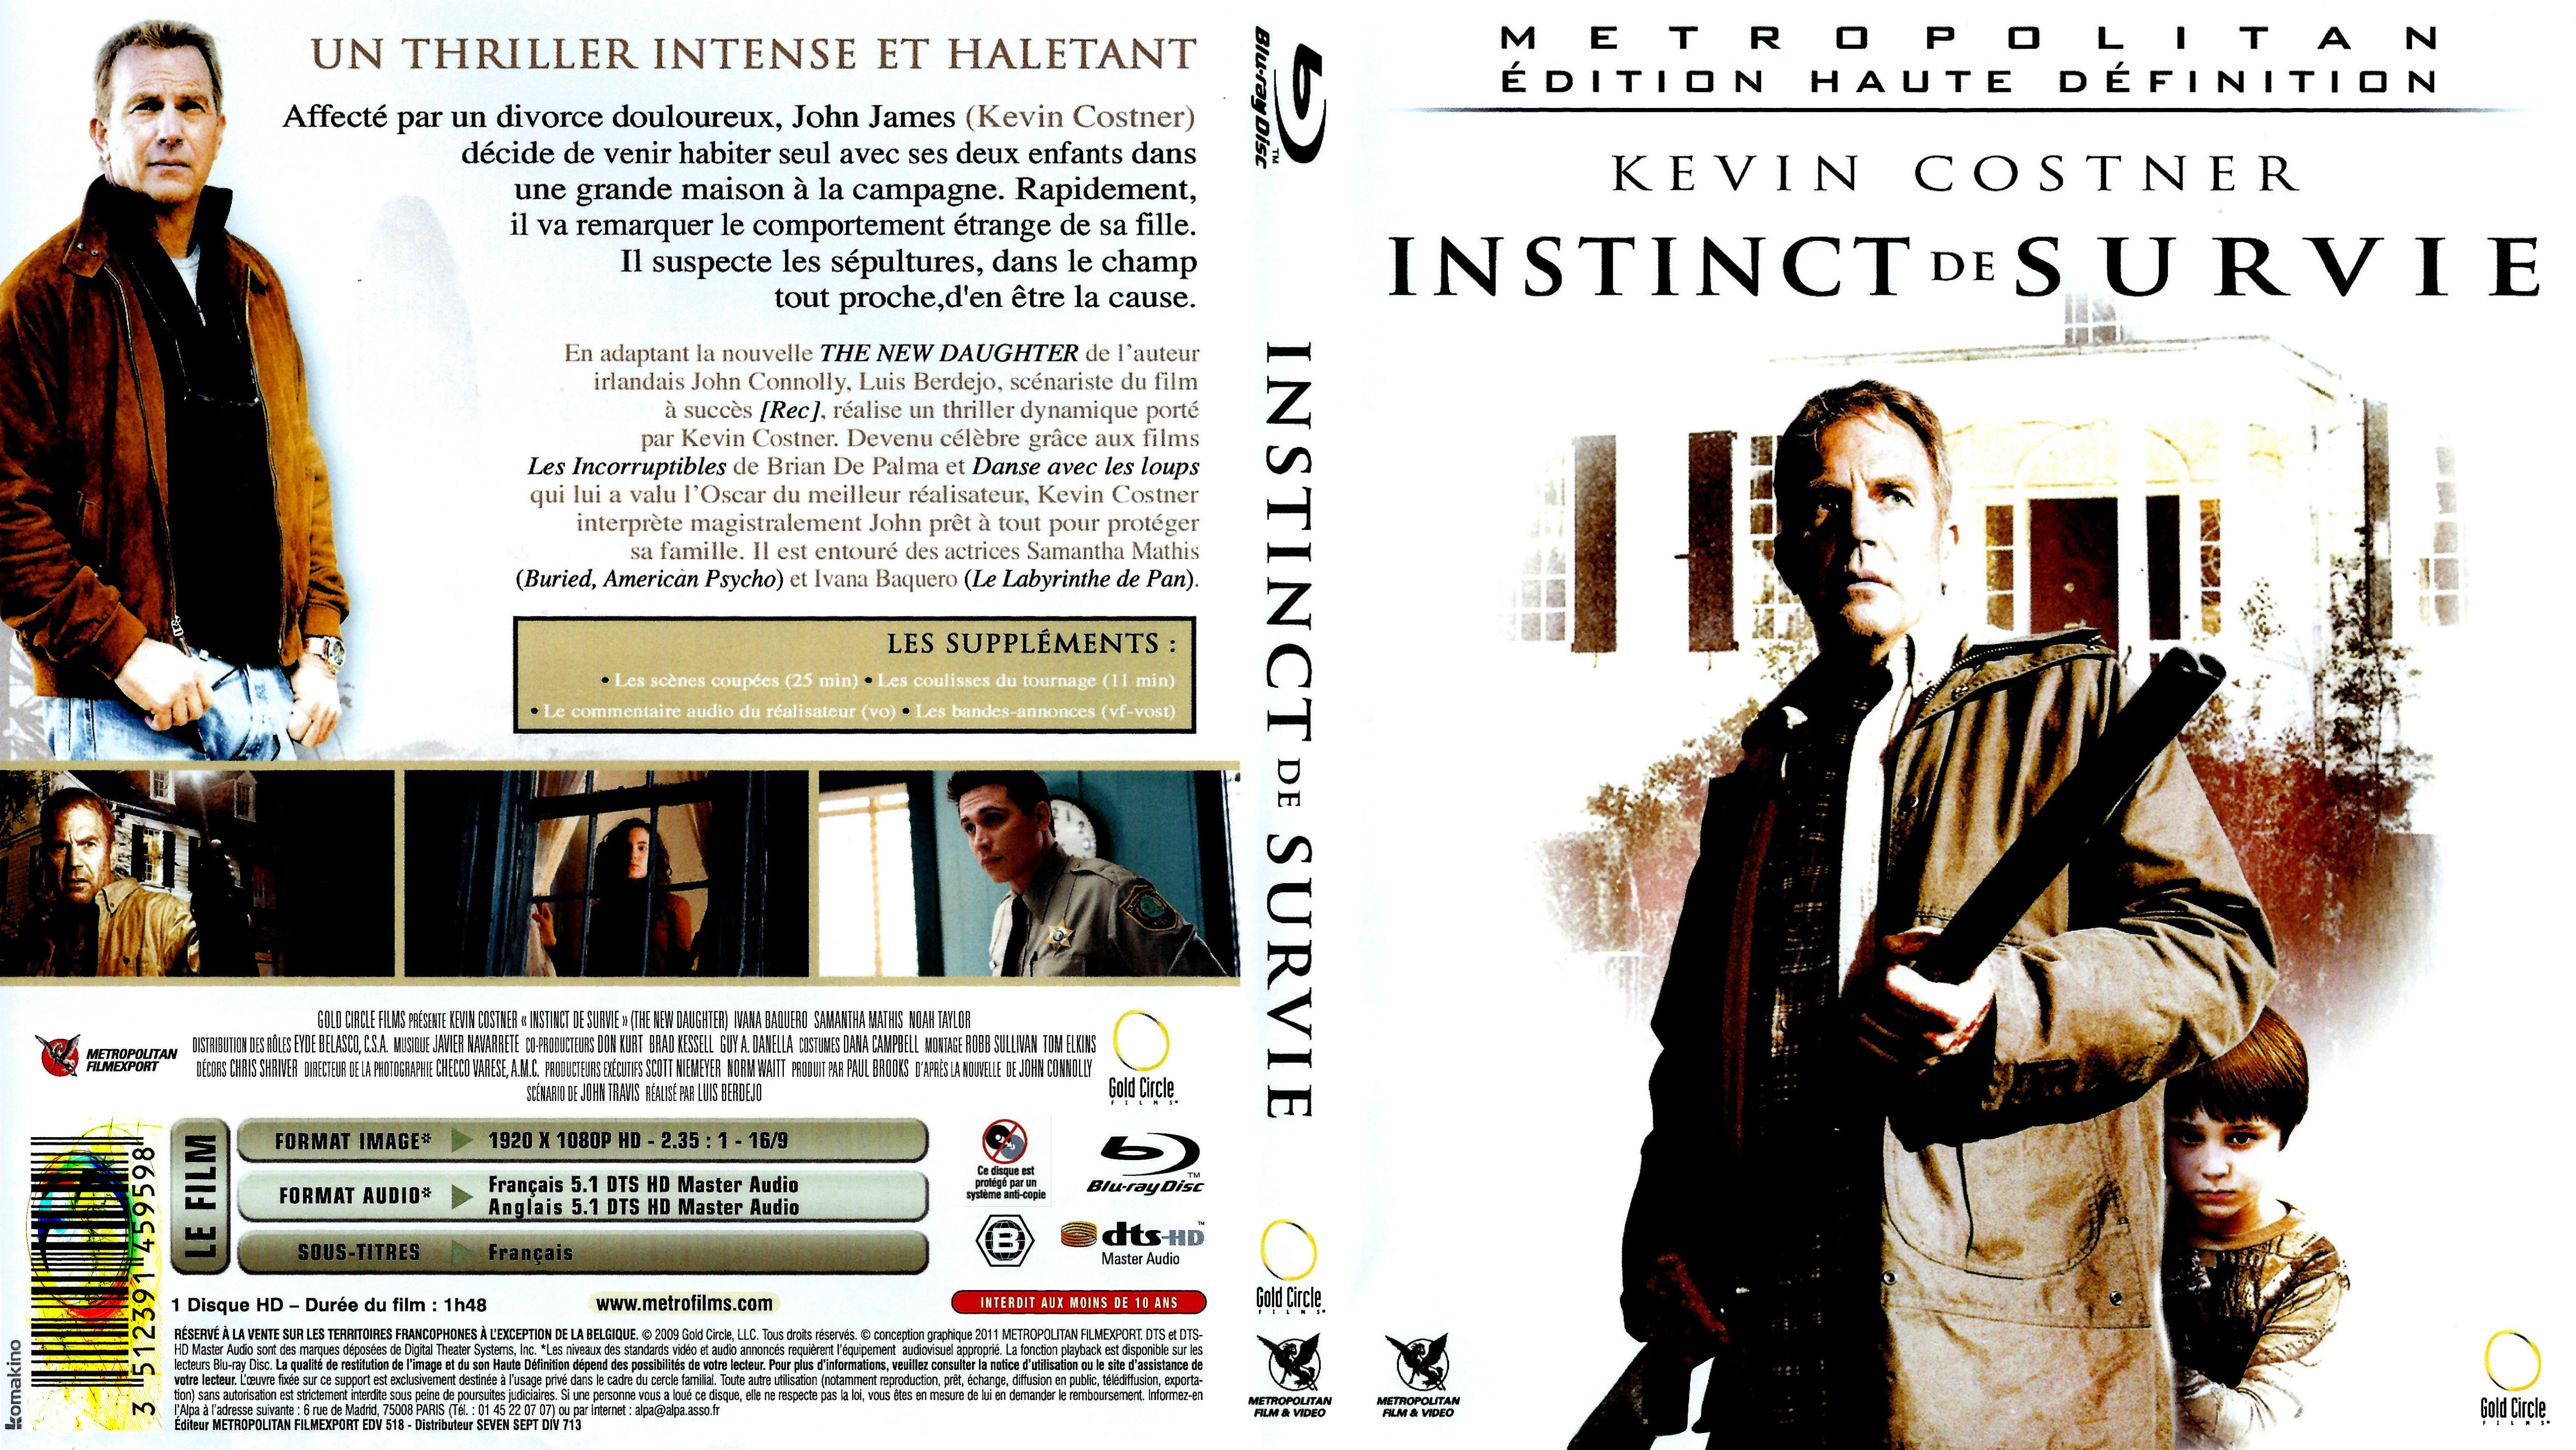 Jaquette DVD Instinct de survie (BLU-RAY)